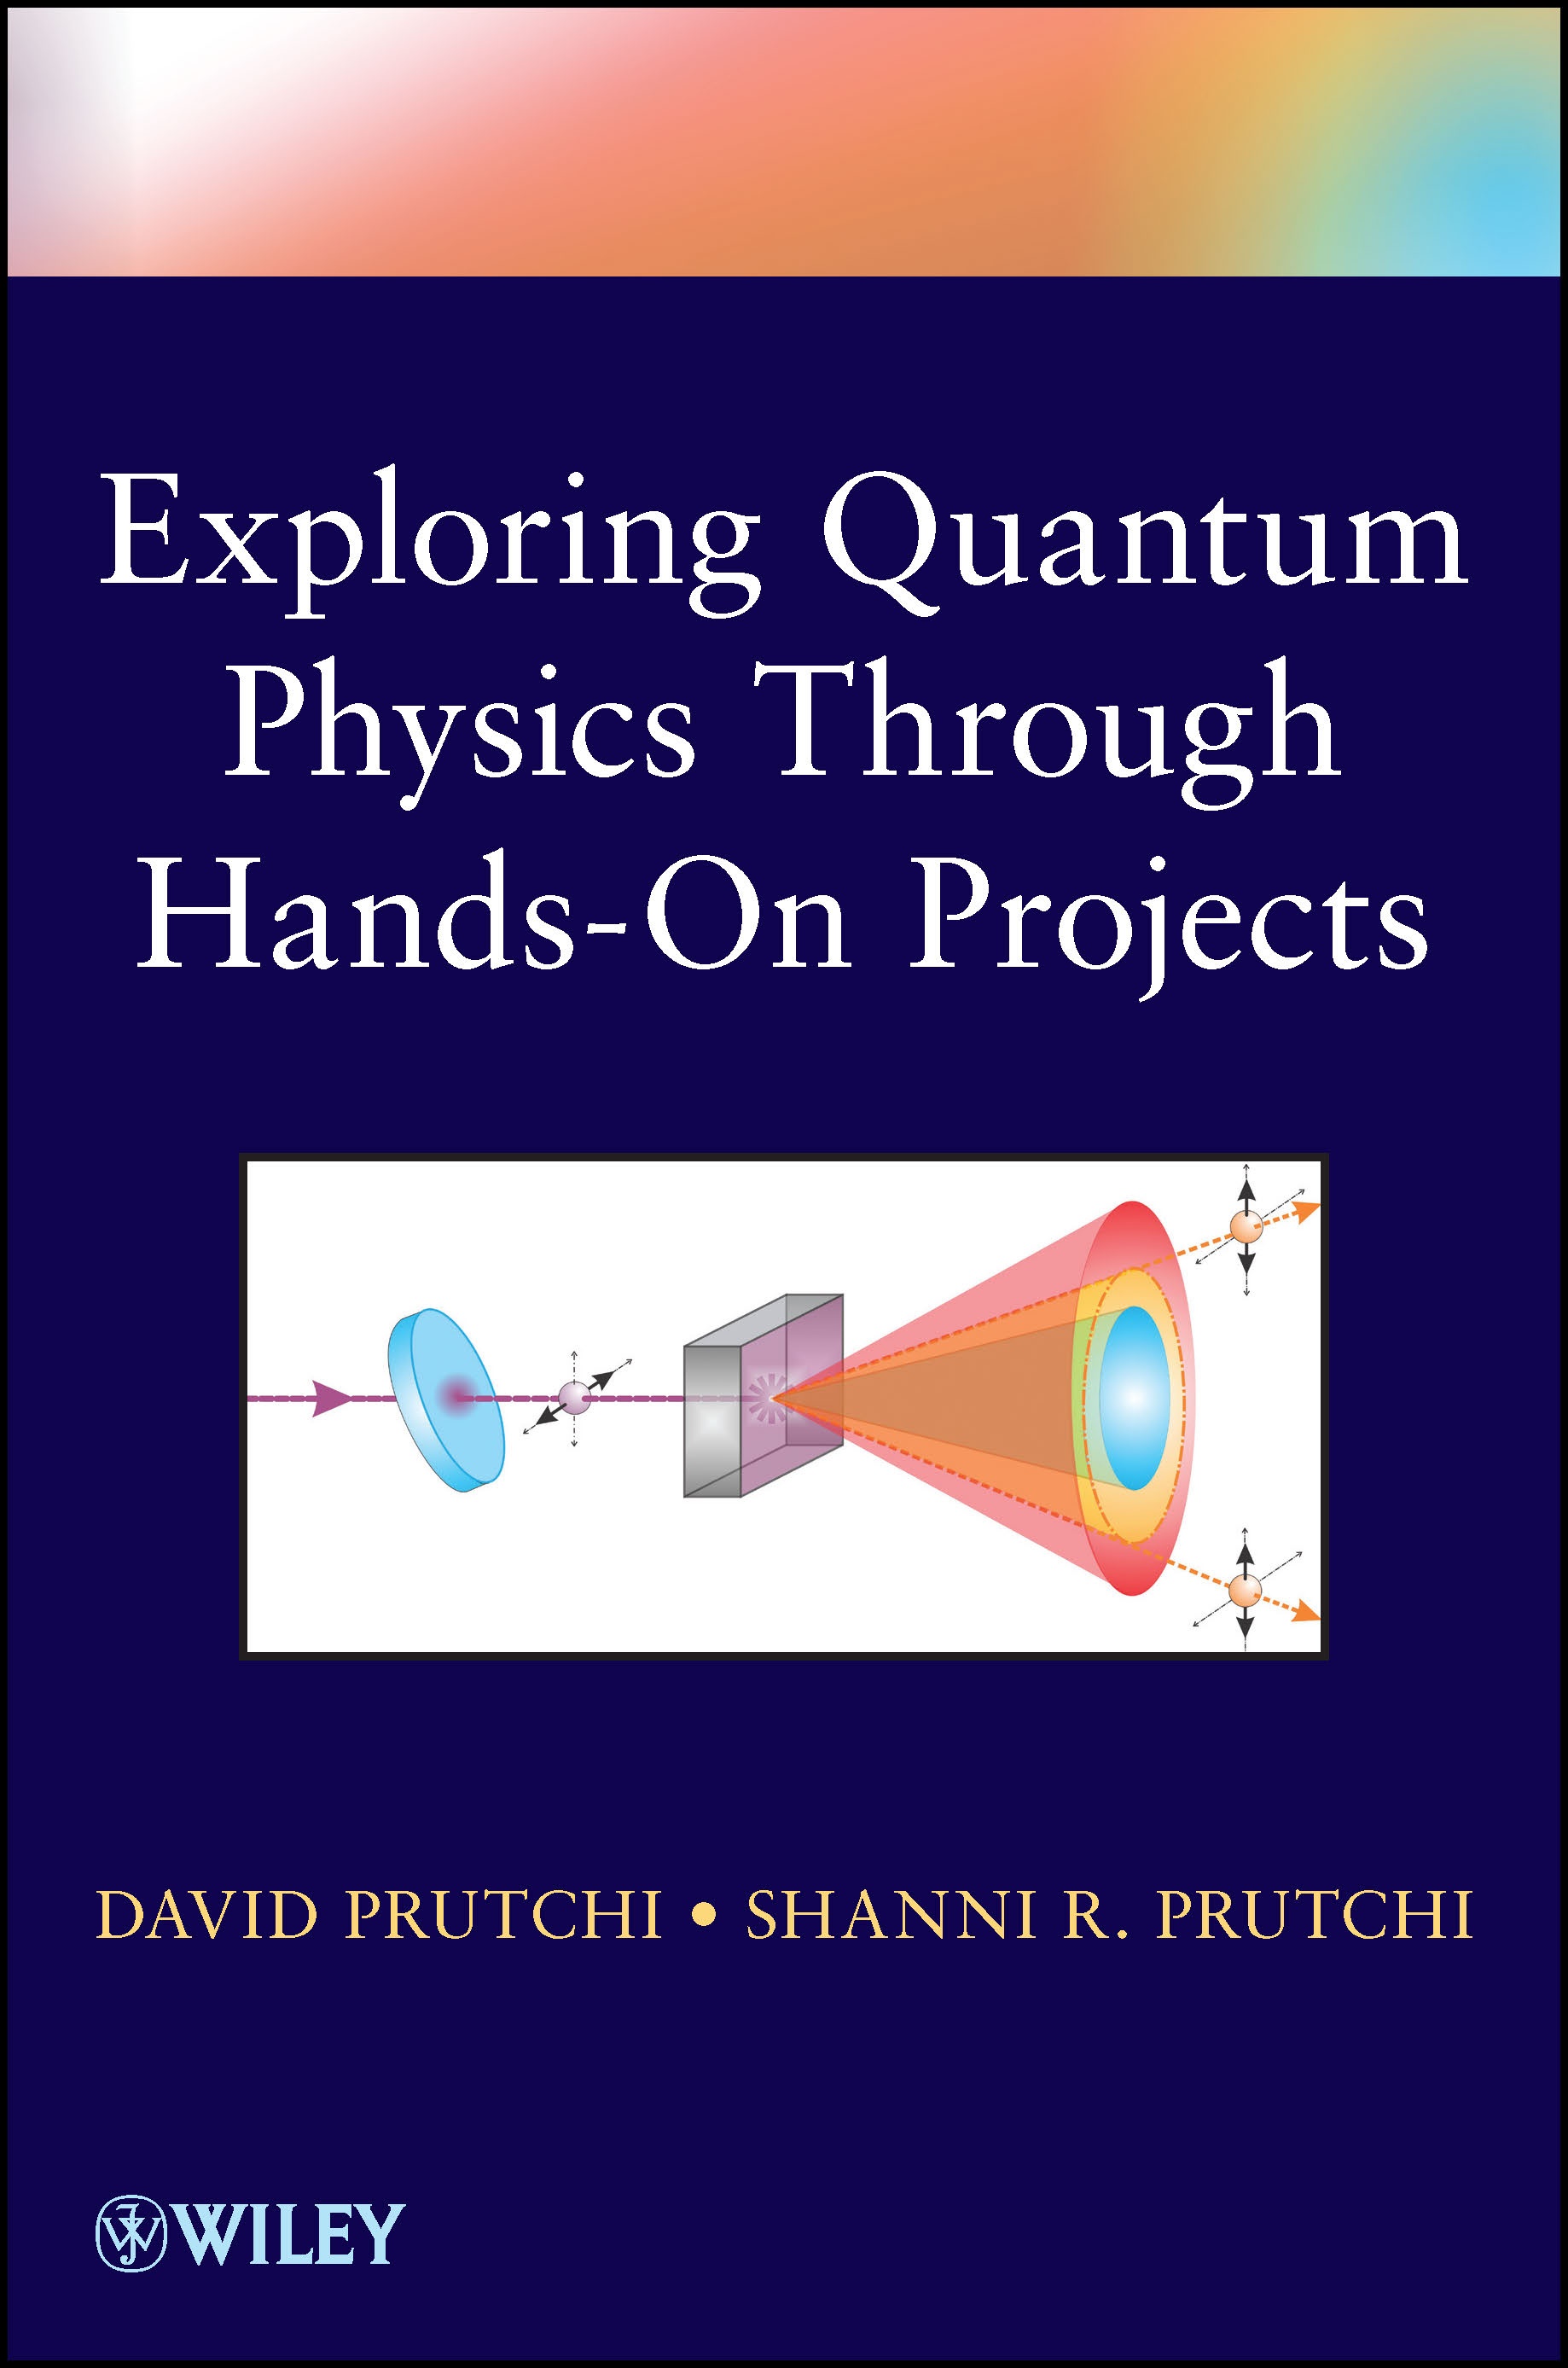 Book Contents – diy Physics Blog